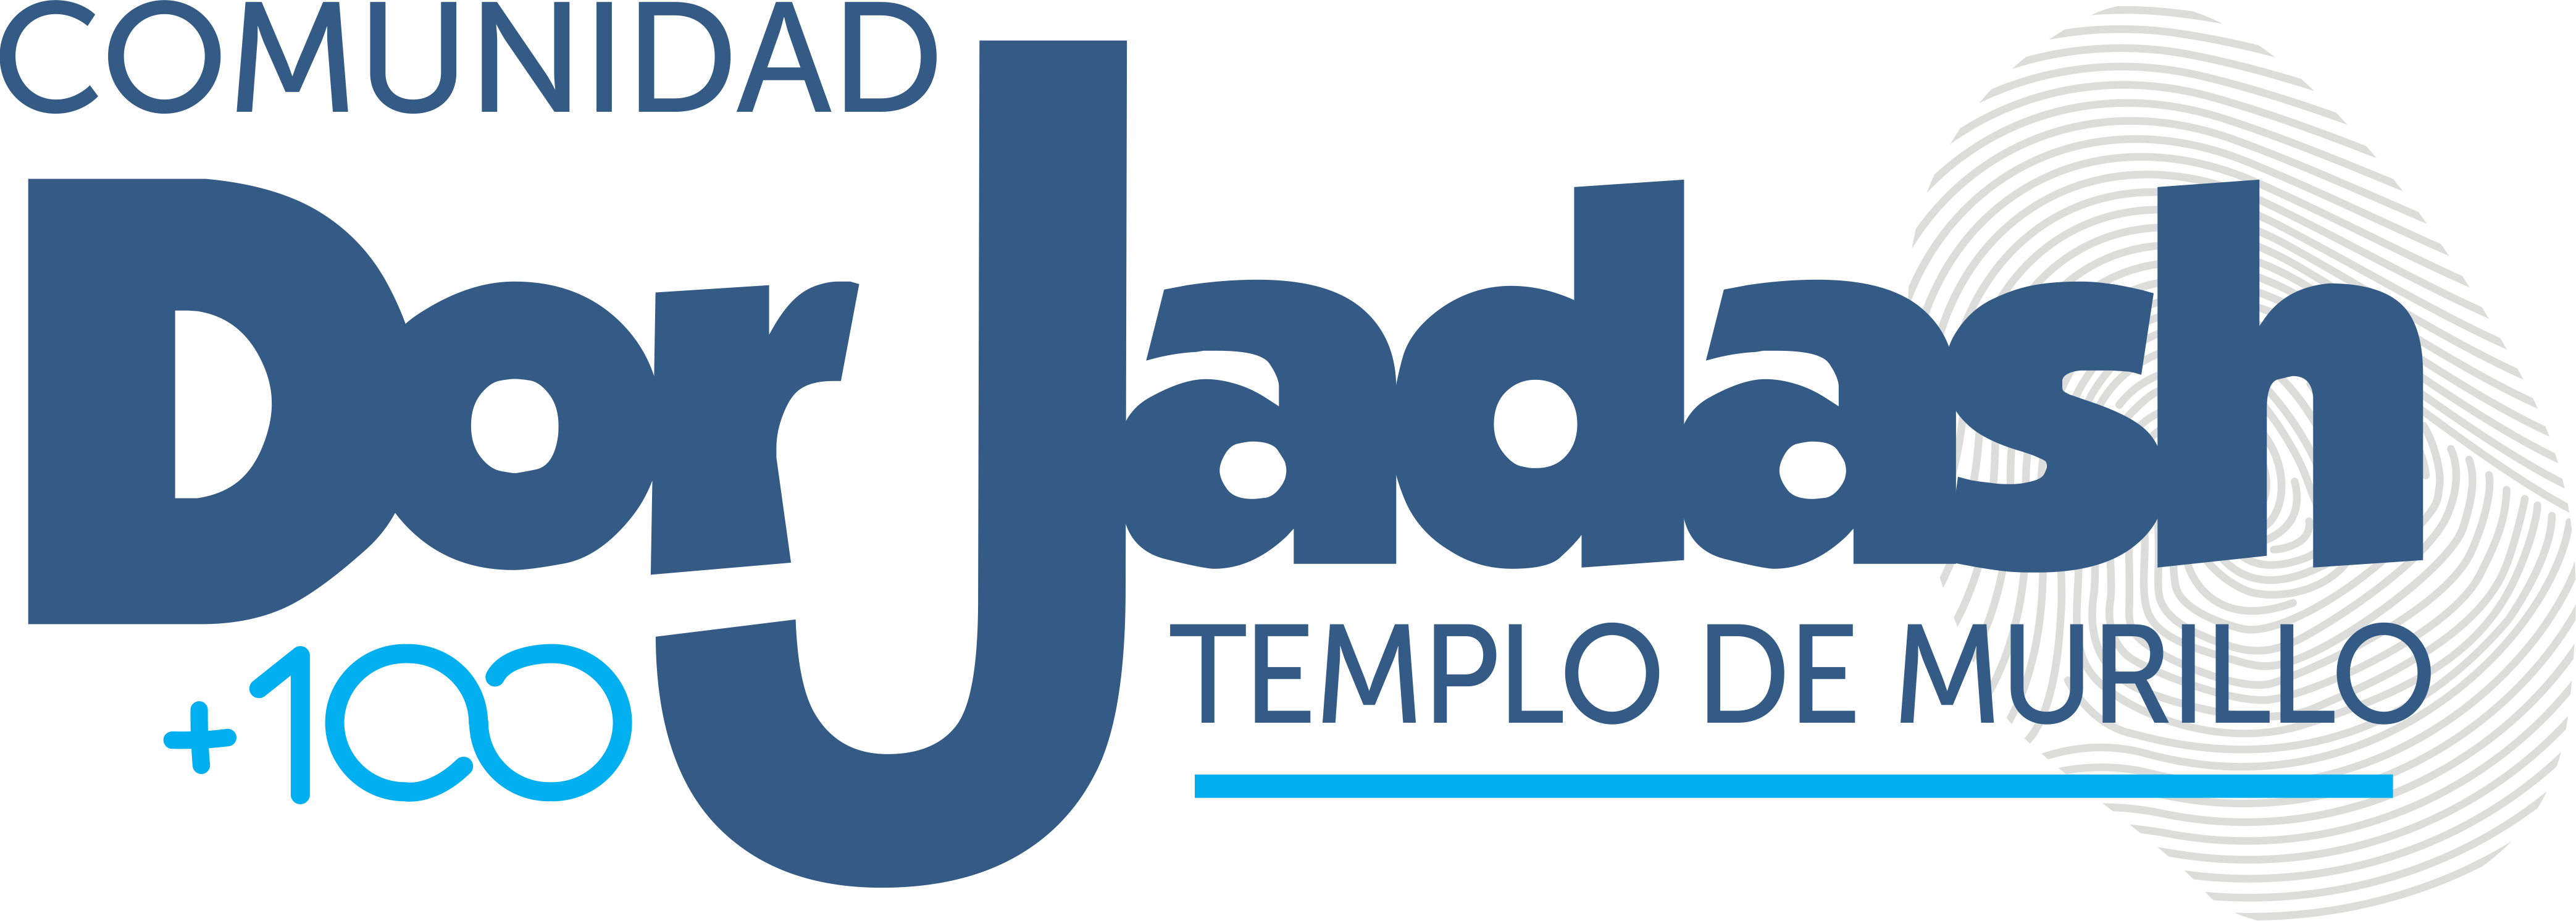  Comunidad Dor Jadash